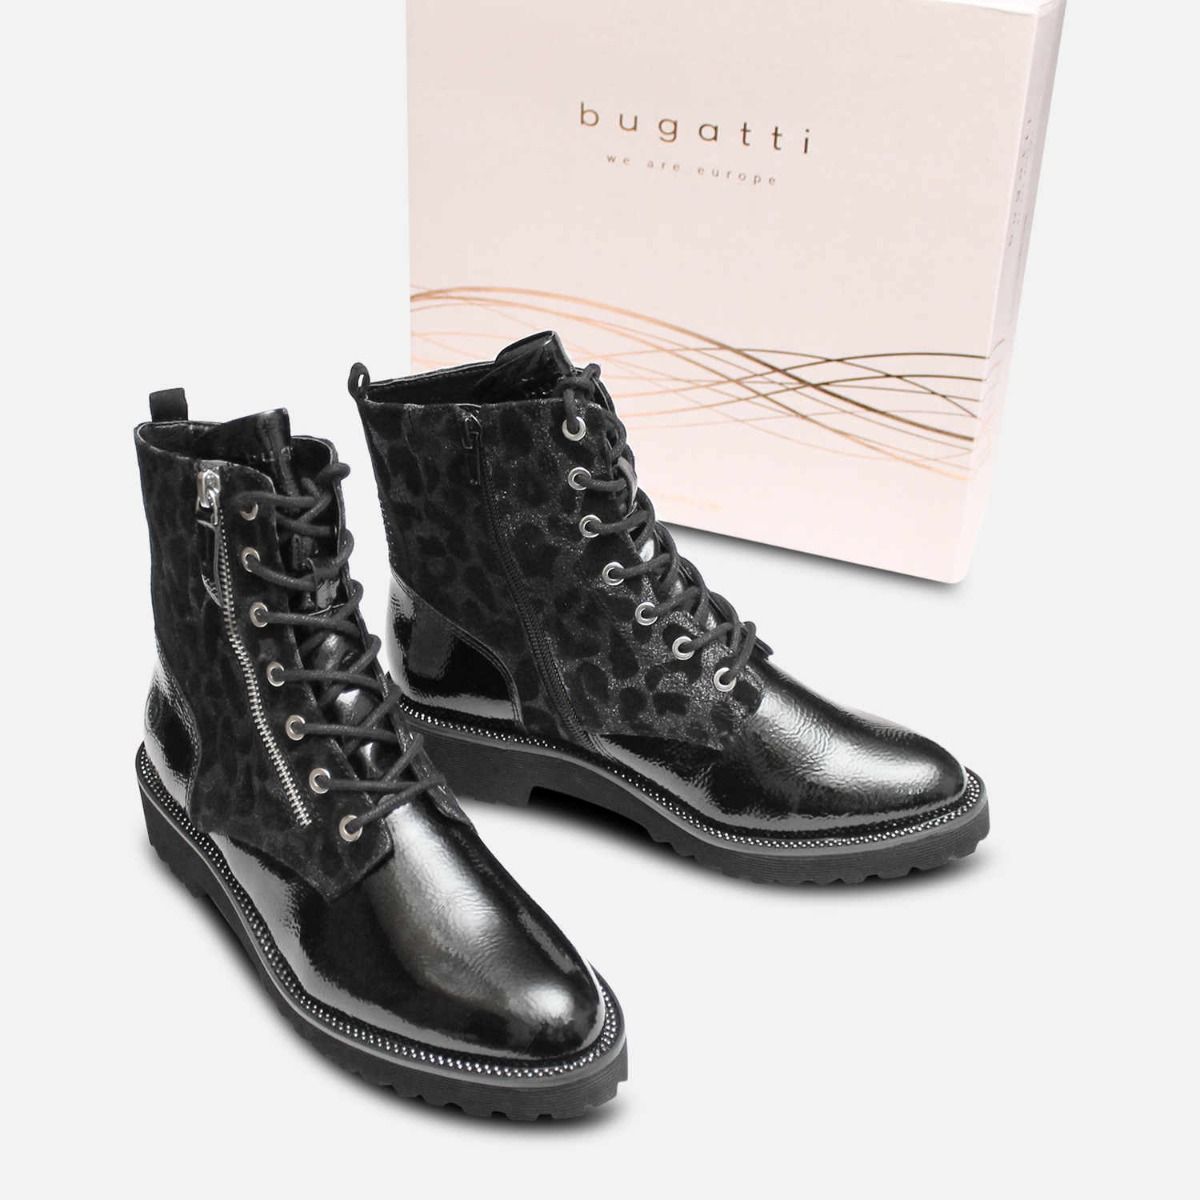 bugatti boots